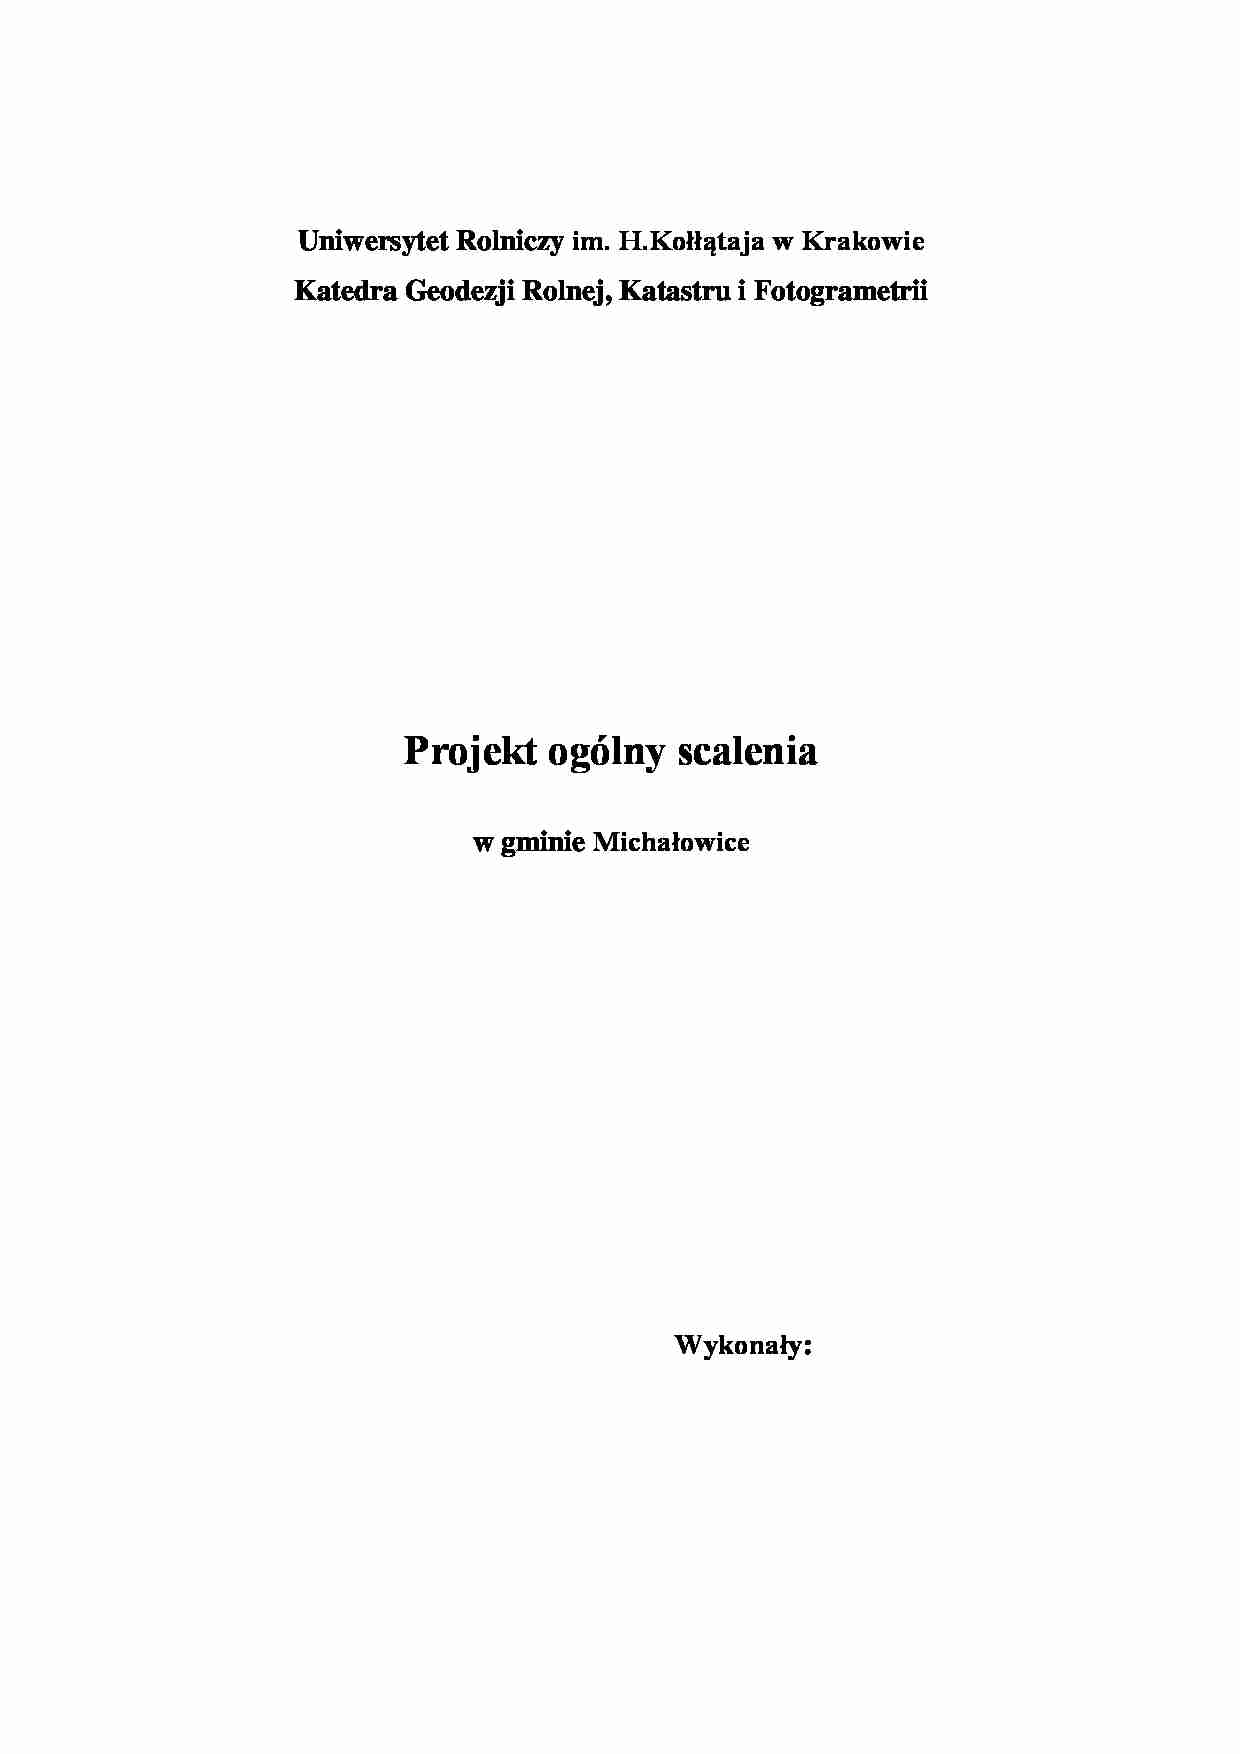 Projekt ogólny scalenia - gmina Michałowice - strona 1